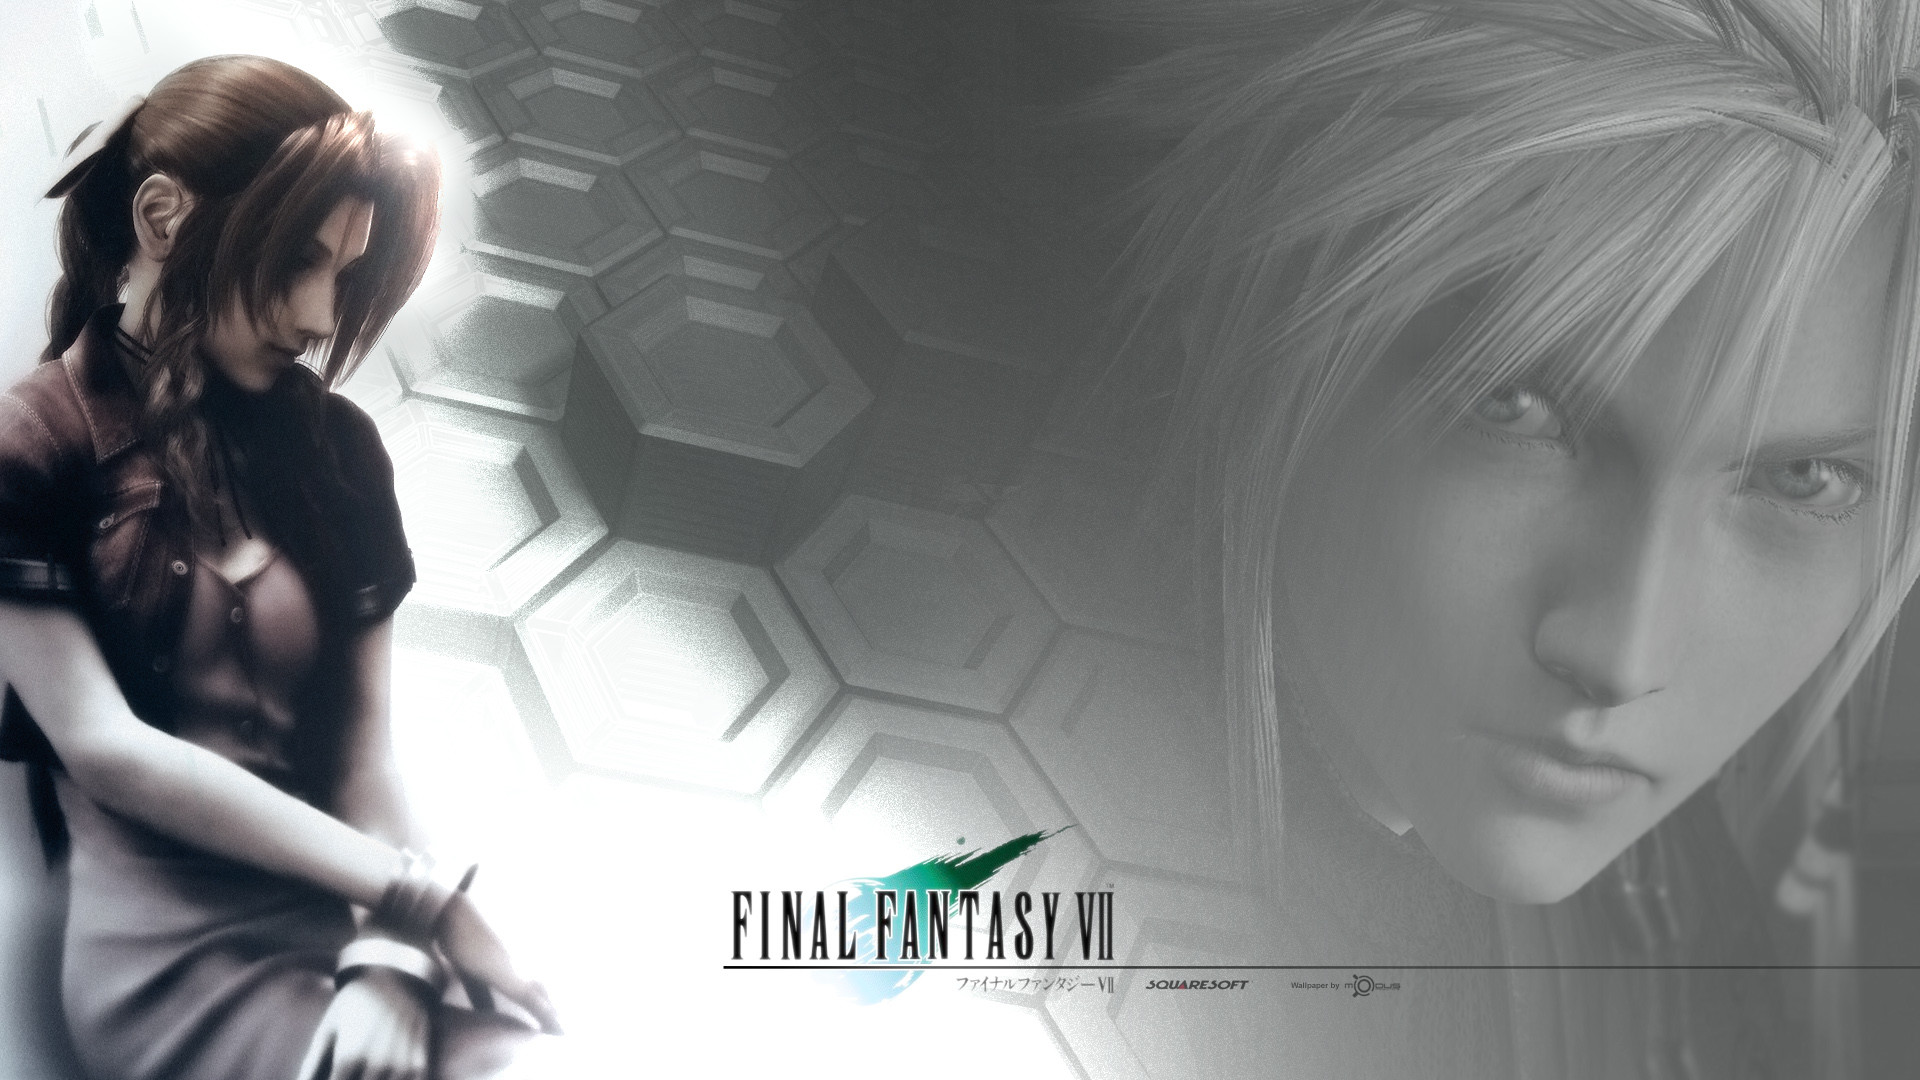 Final Fantasy VII download Final Fantasy VII image